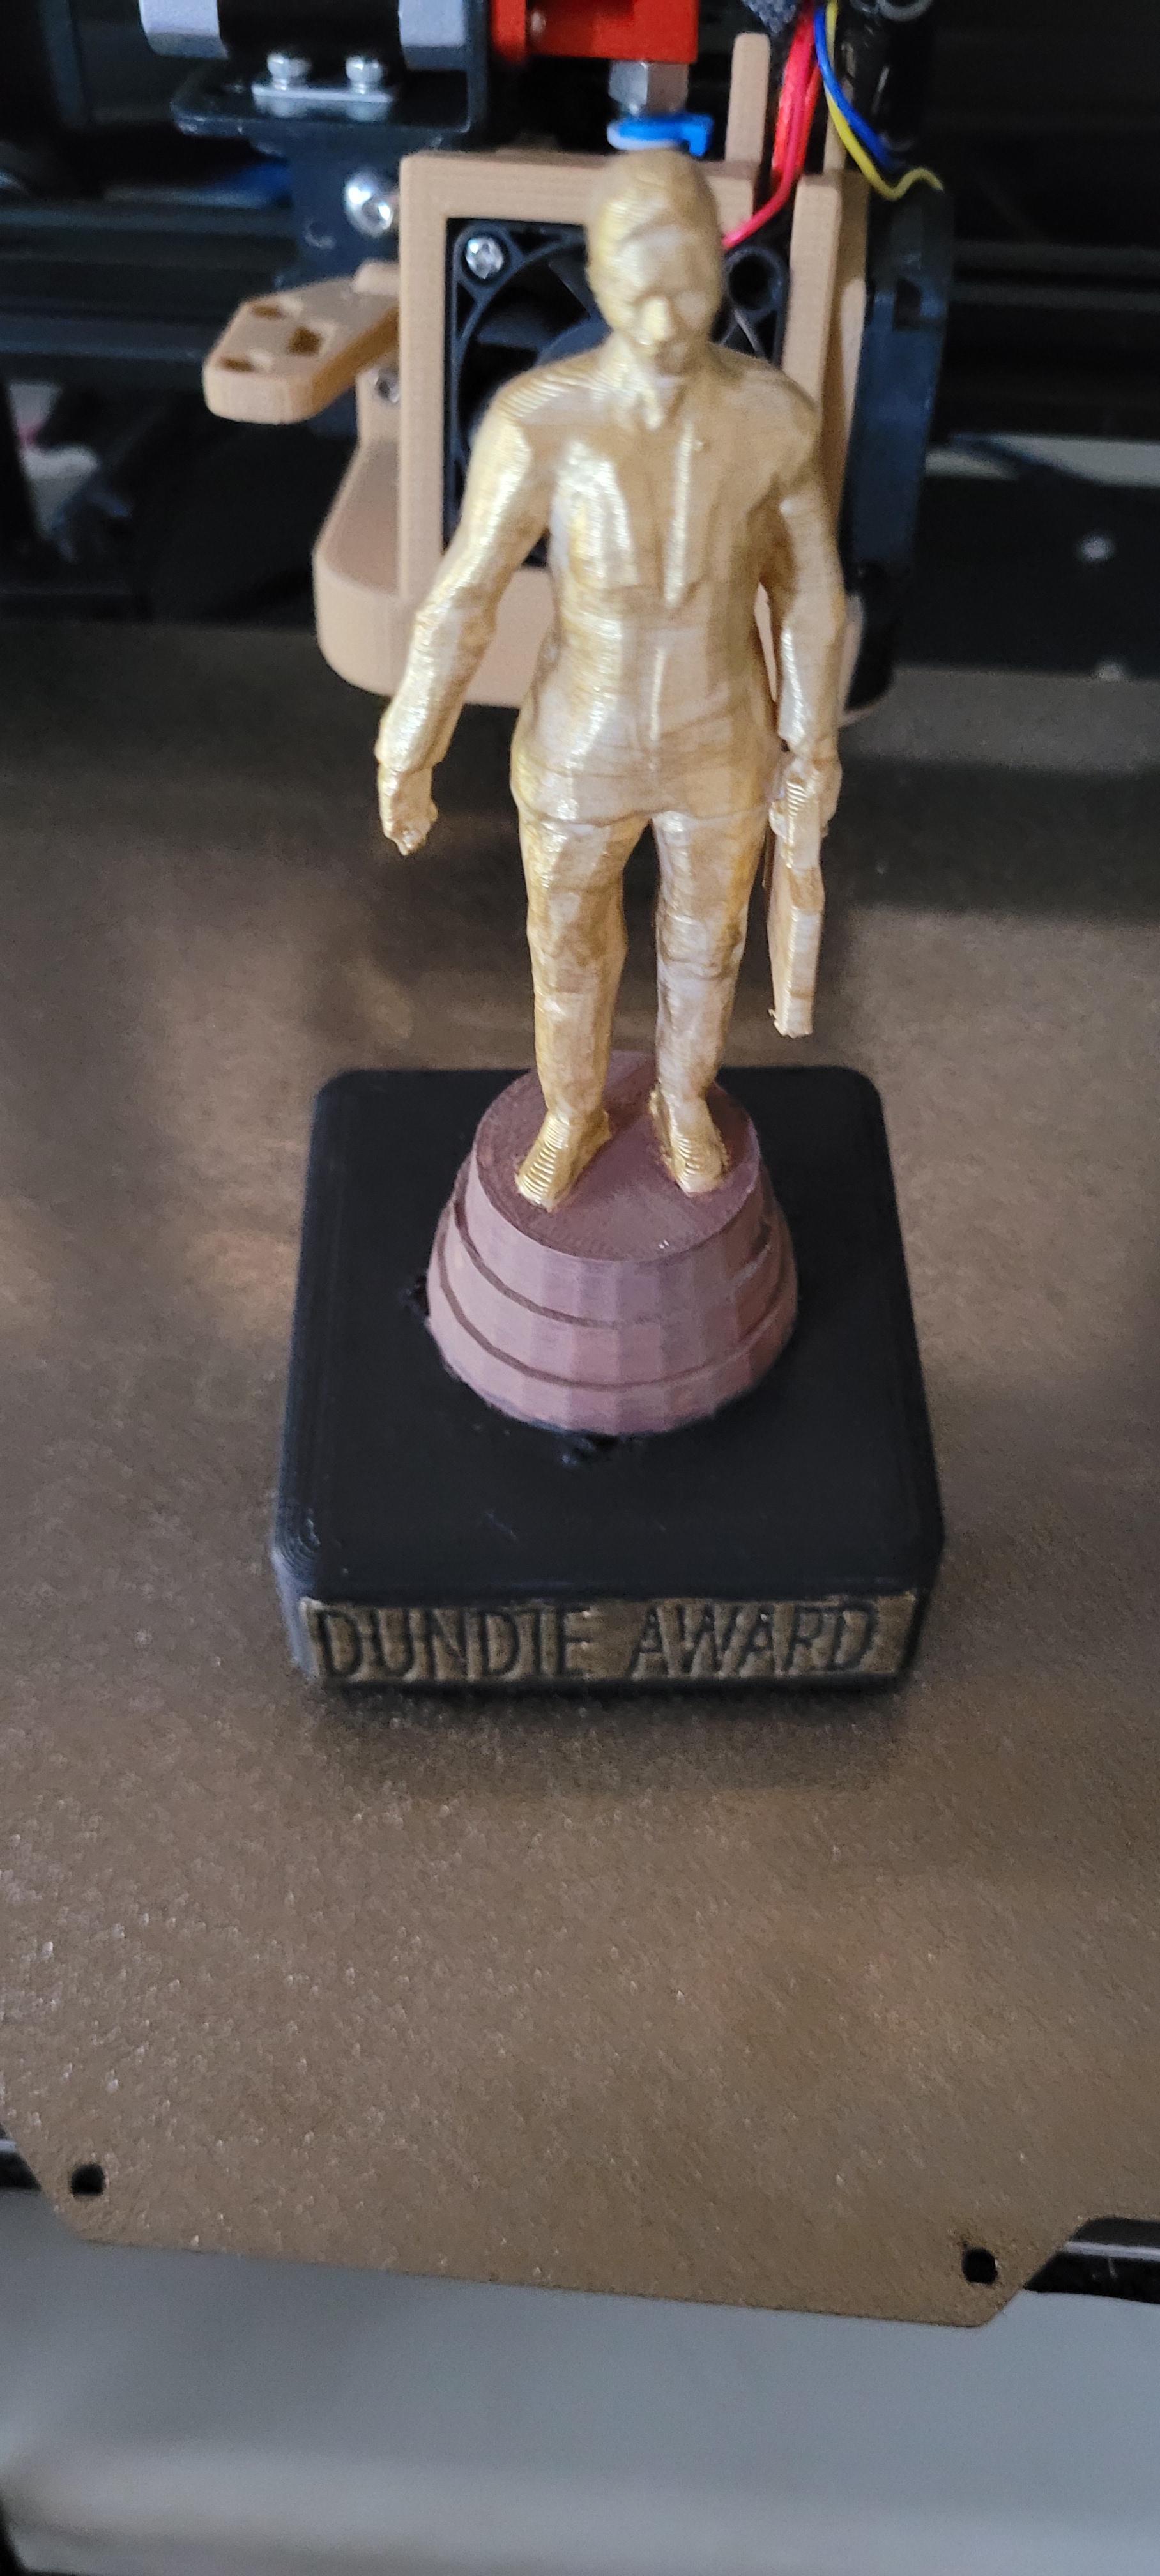 Remix - Dundee Award 3d model